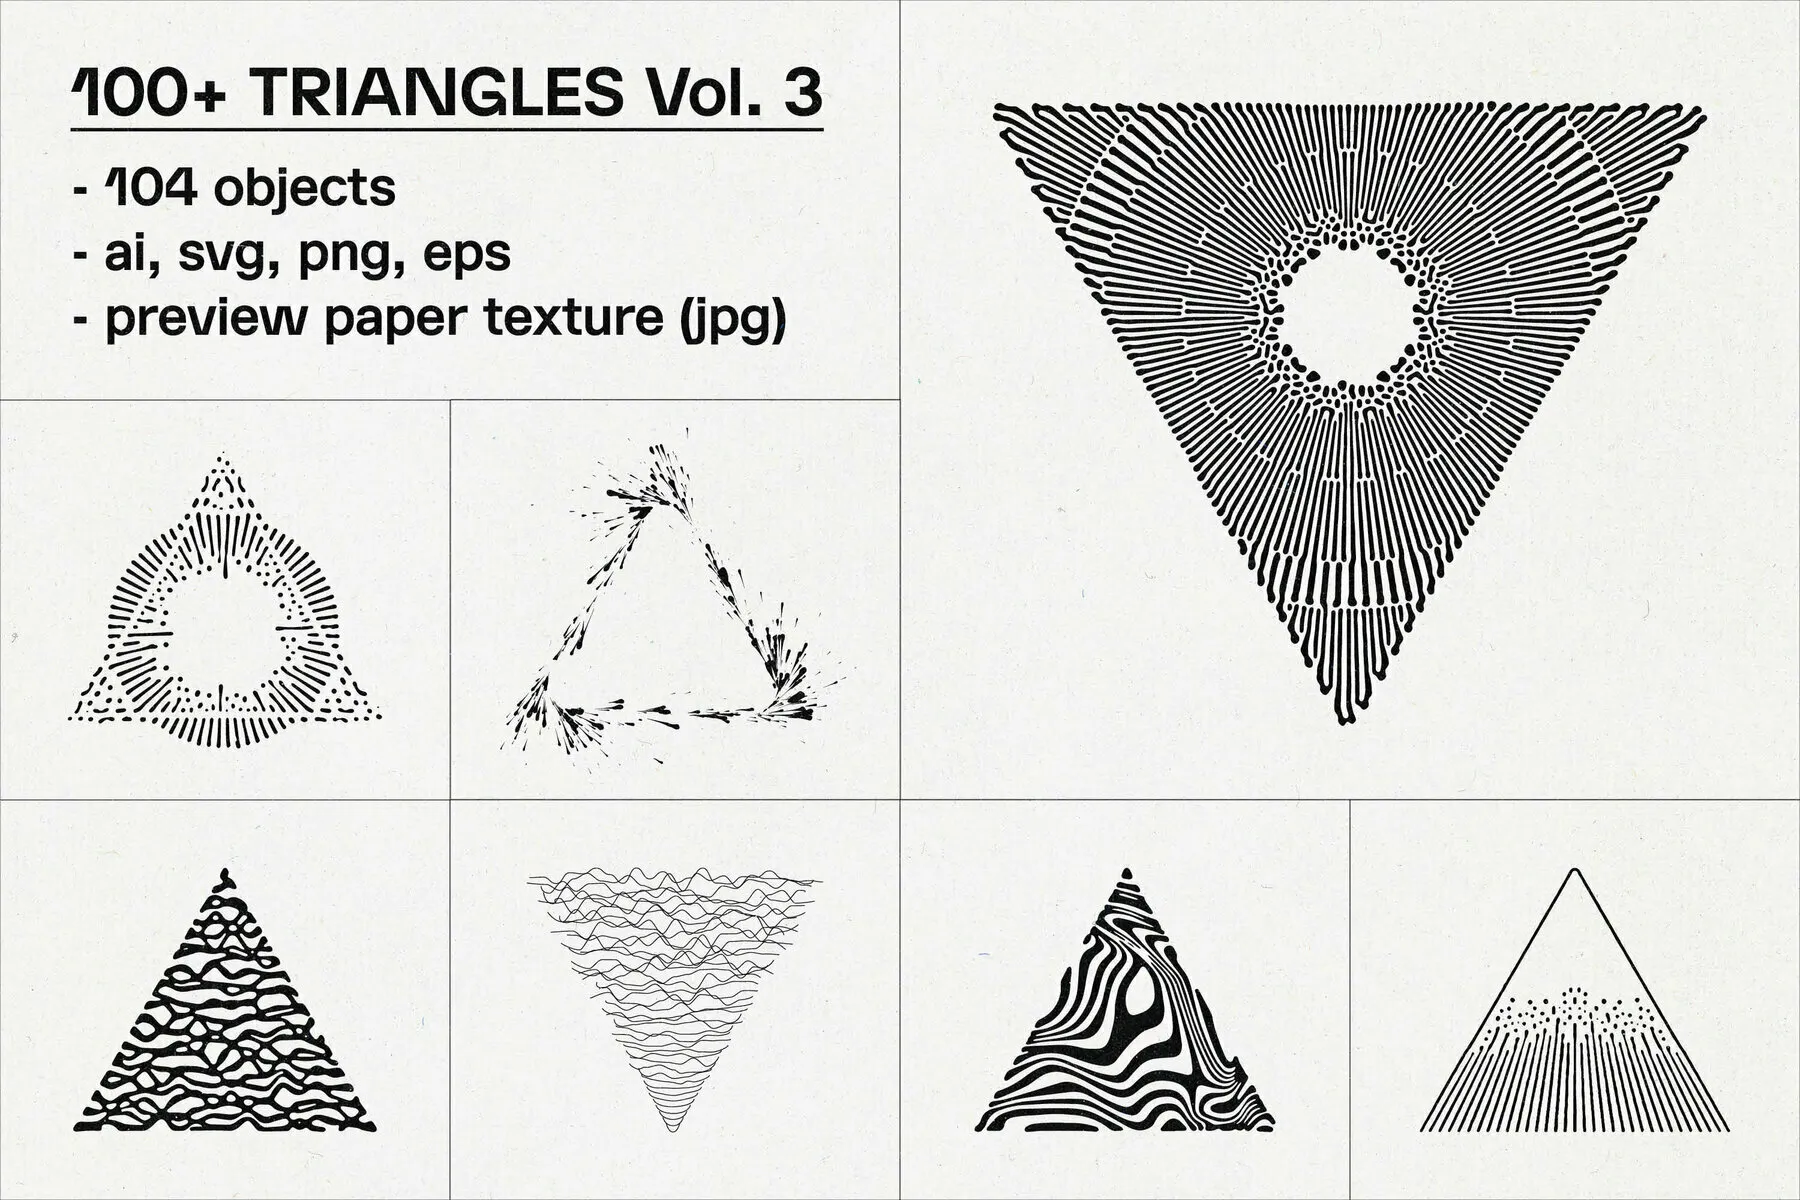 Triangles Vol. 3